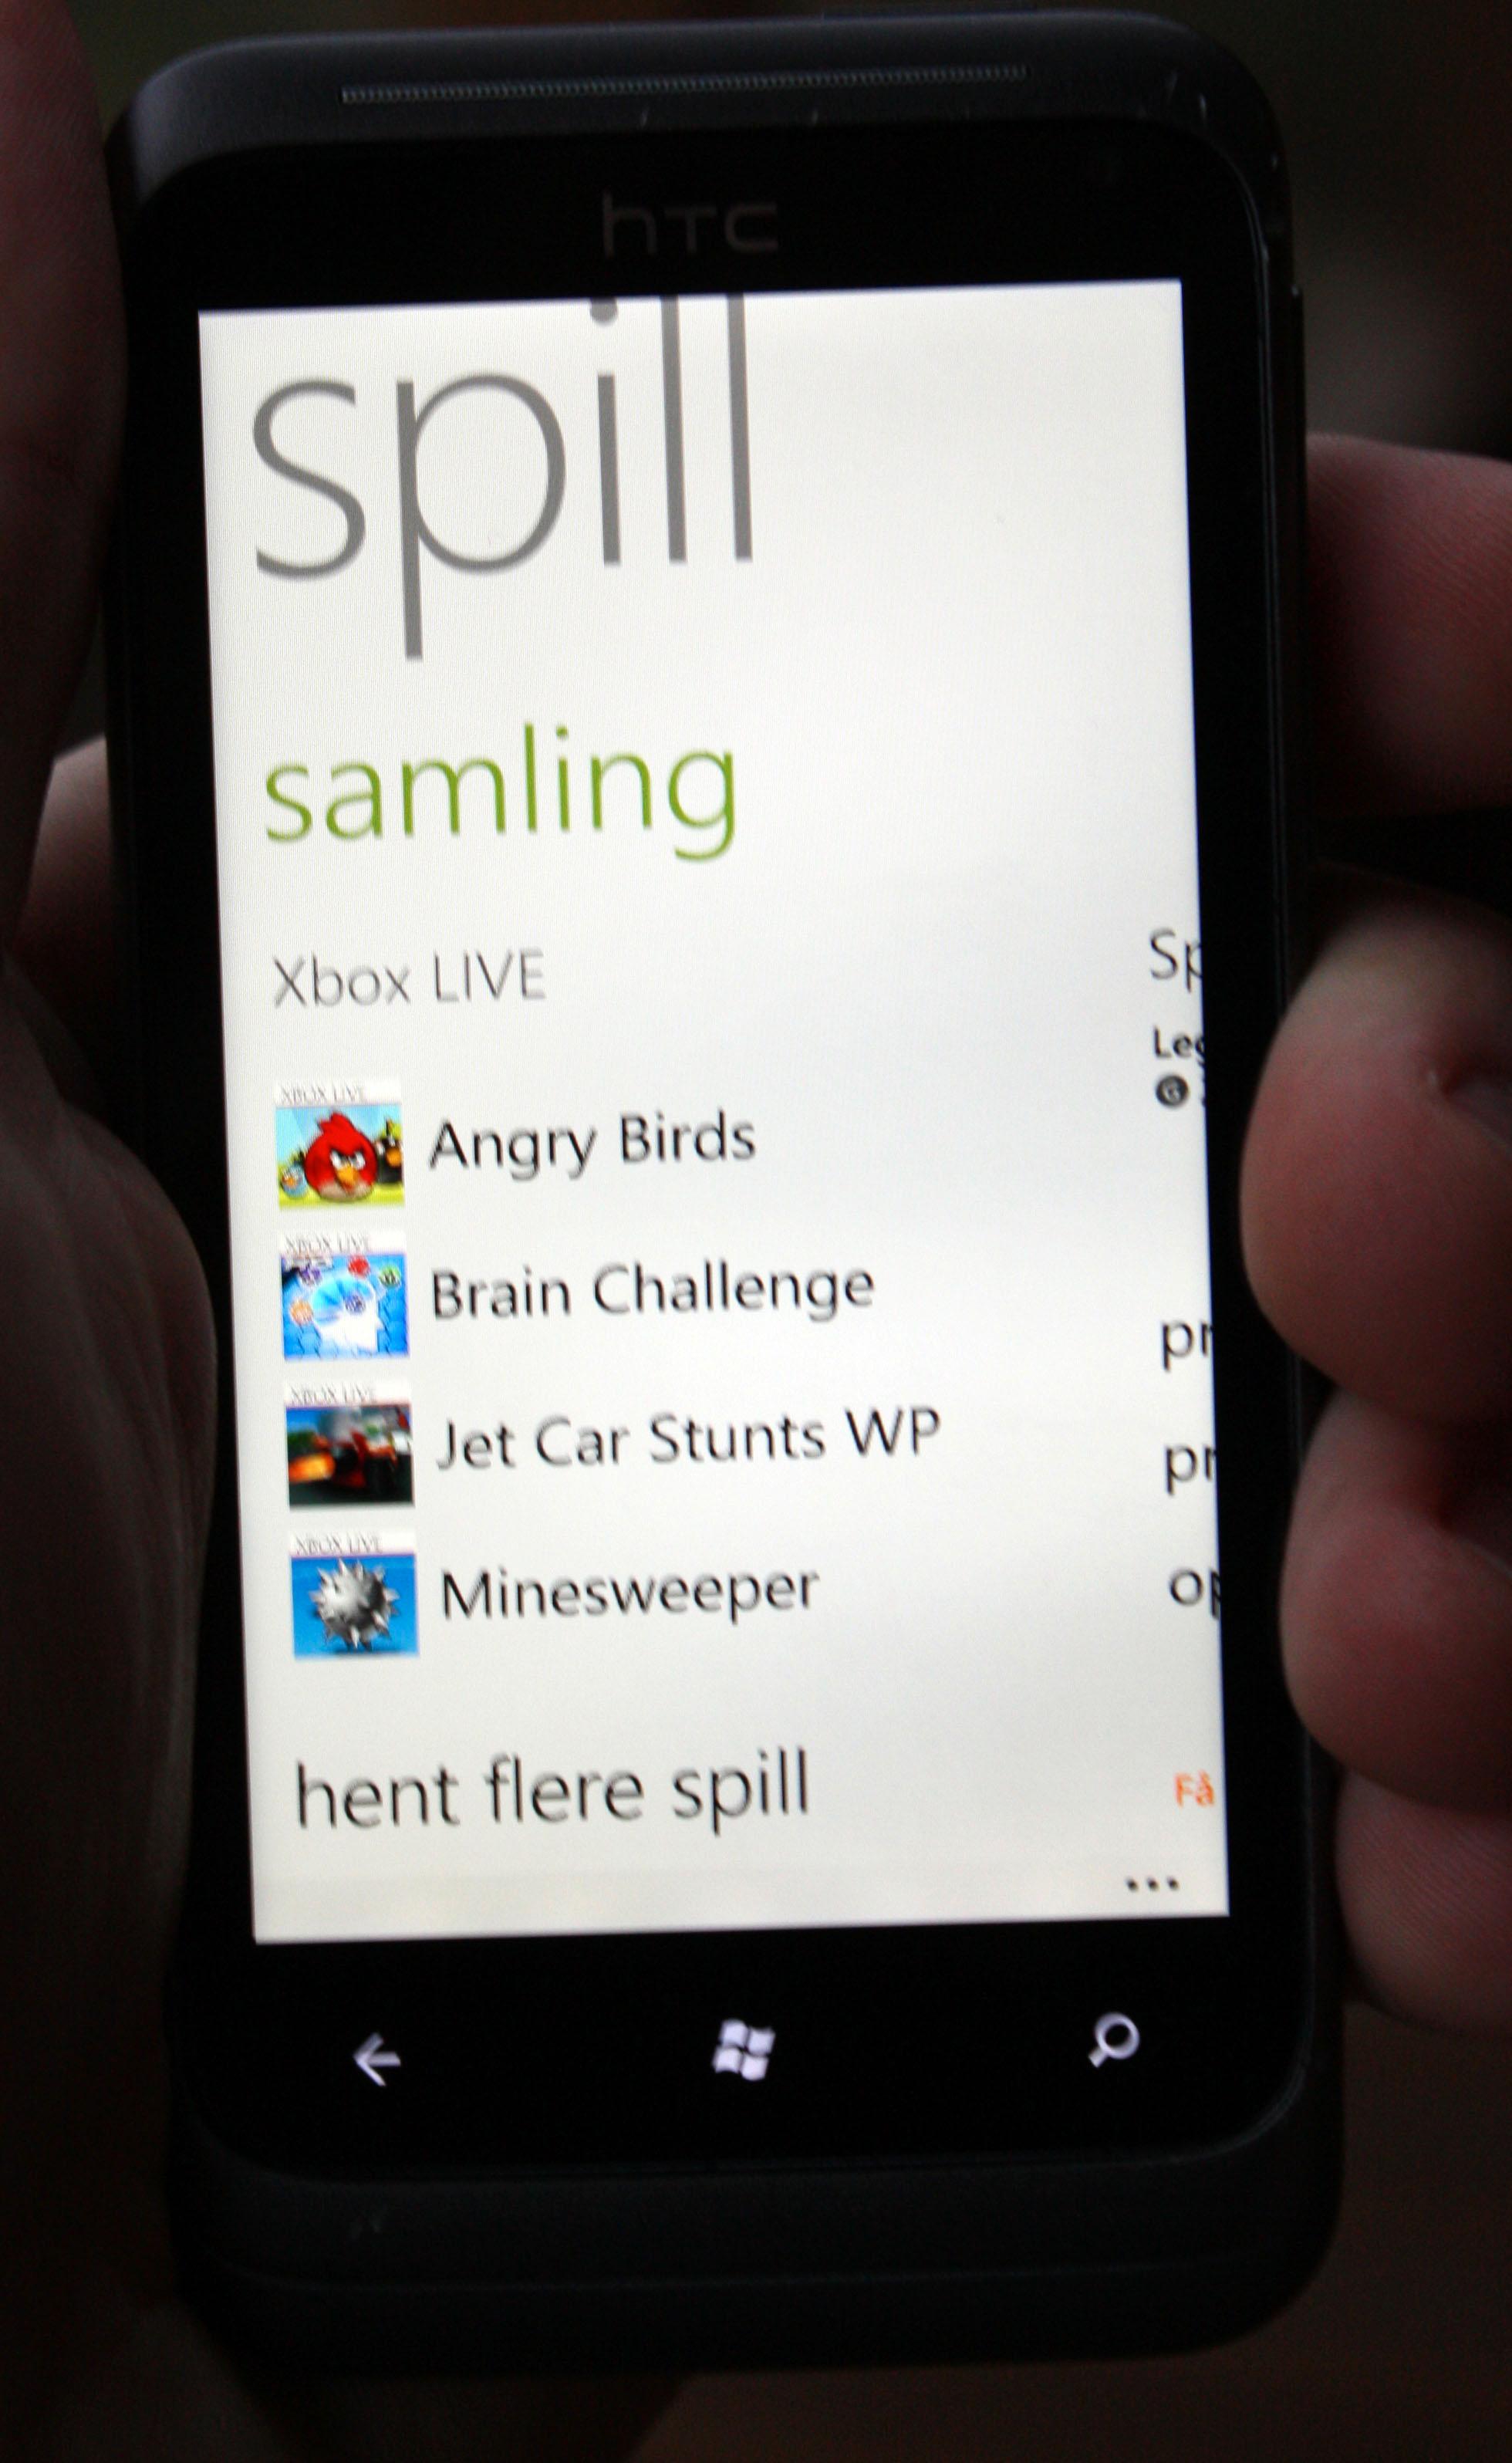 Du finner mange av de klassiske mobilspillene også til Windows Phone 7.5.